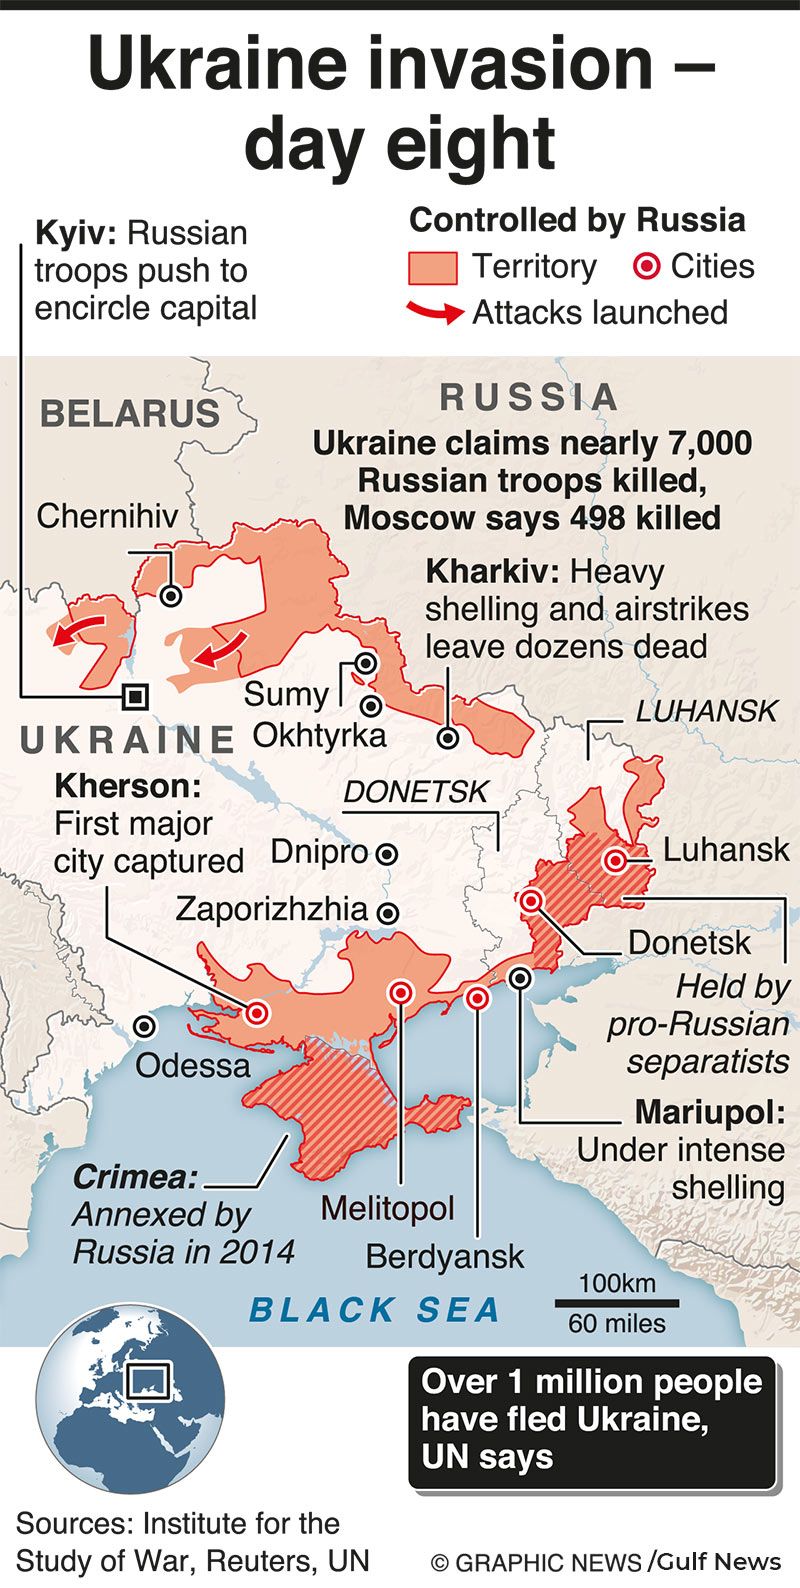 Russia attacks Ukraine - Day 8 details